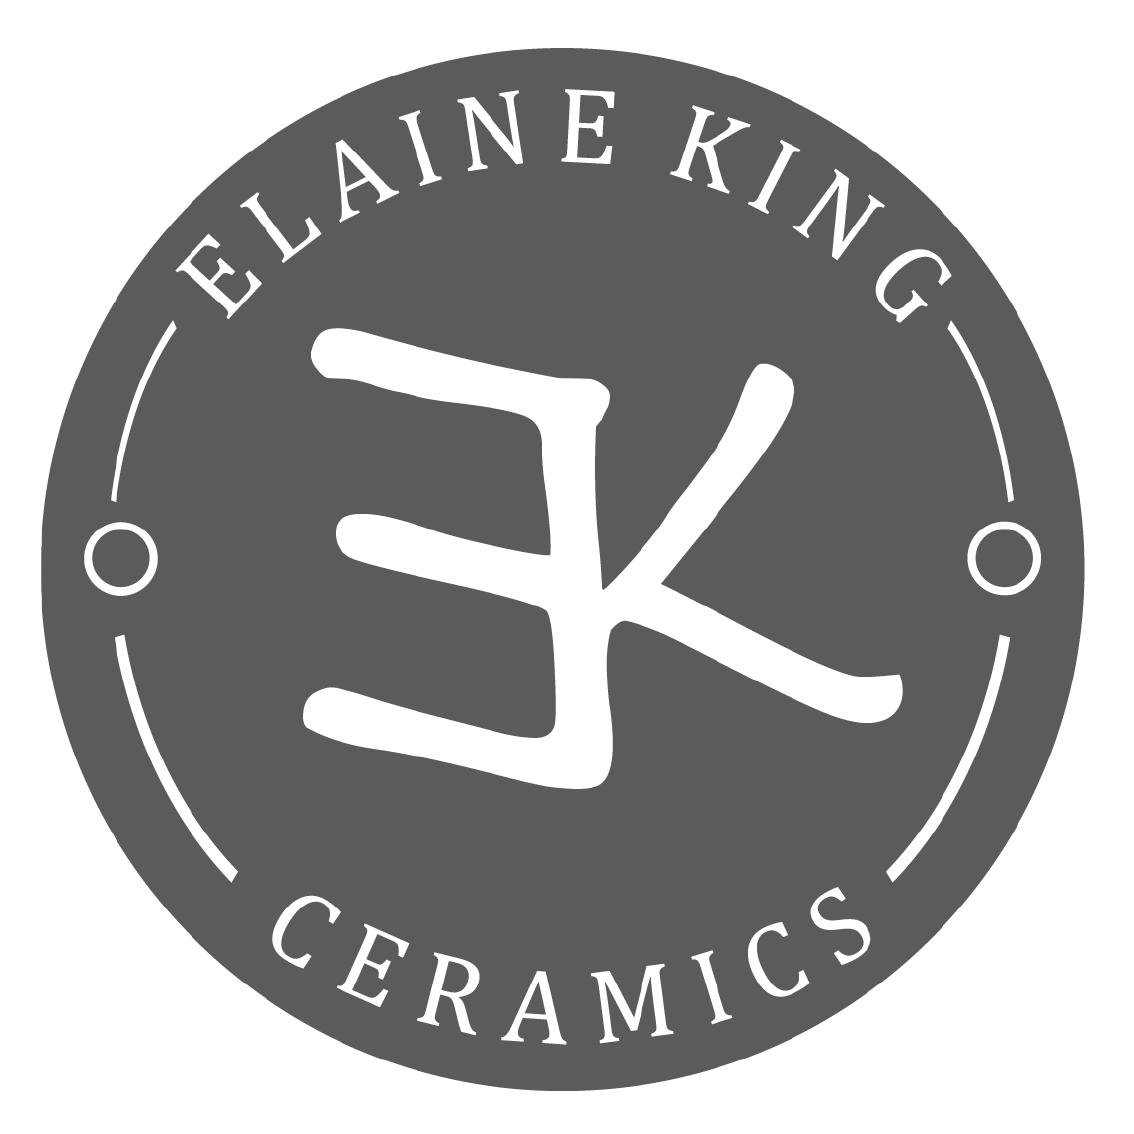 Elaine King Ceramics